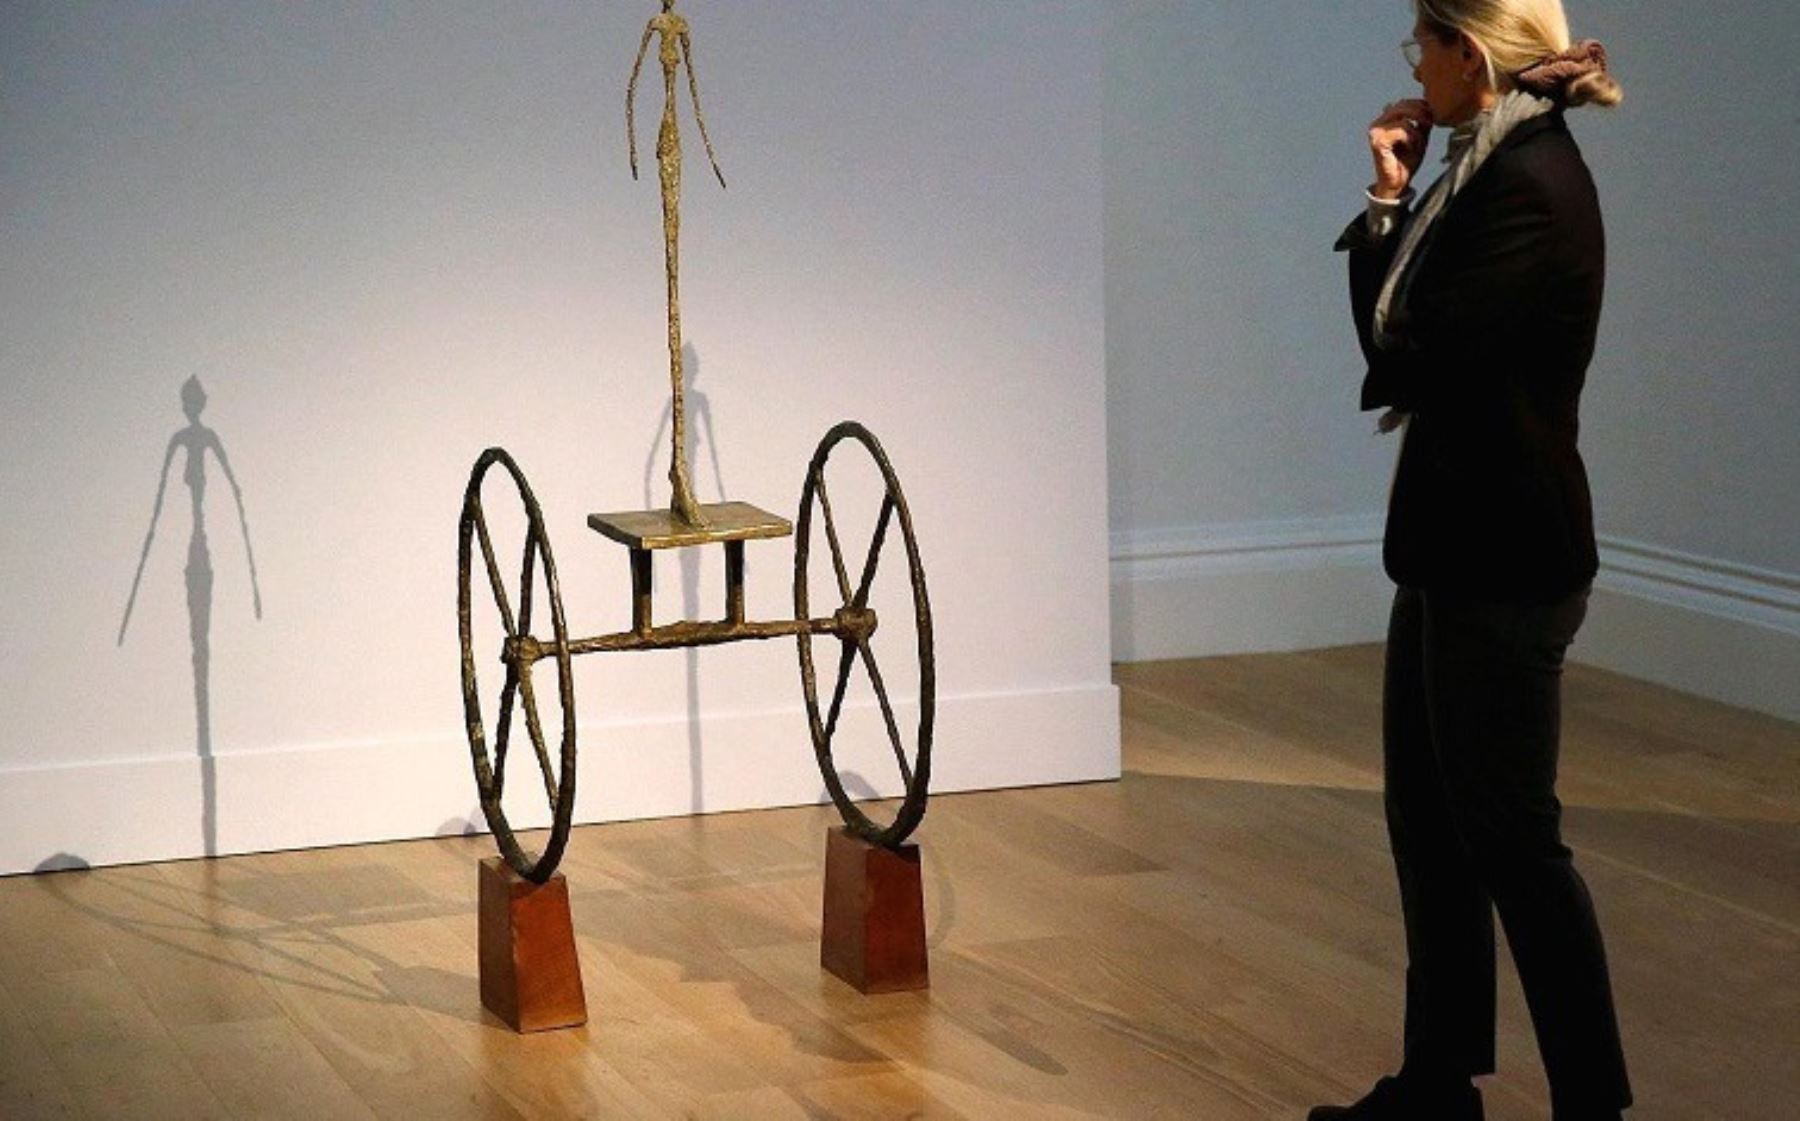 10- Alberto Giacometti, "Carro", escultura vendida en 100,96 millones de dólares el 4 de noviembre de 2014 en Sotheby